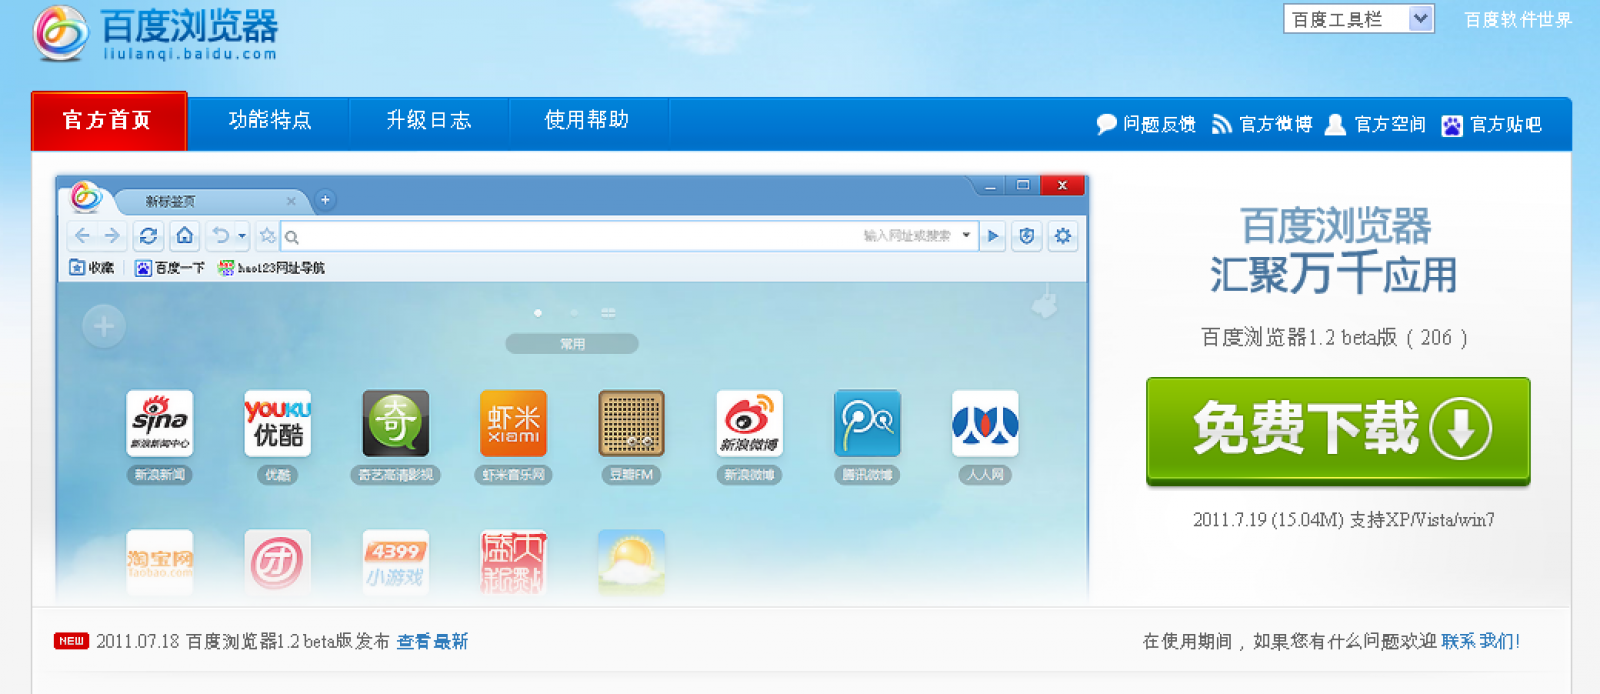 El navegador lanzado por el buscador chino es similar a Chrome